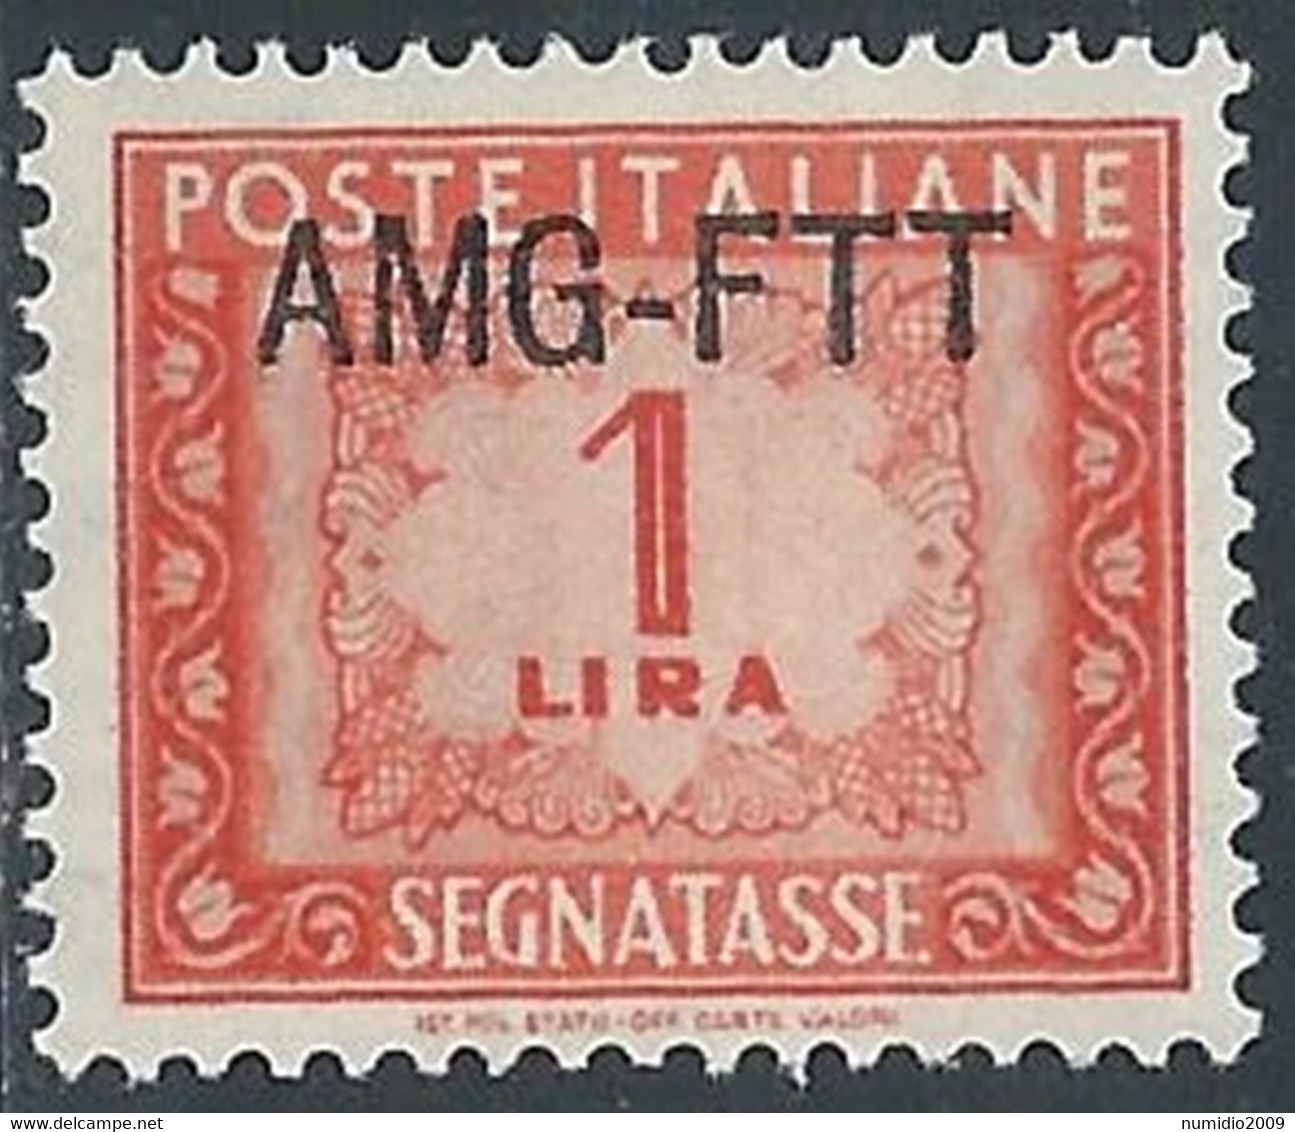 1949-54 TRIESTE A SEGNATASSE 1 LIRA MNH ** - RE10-9 - Portomarken